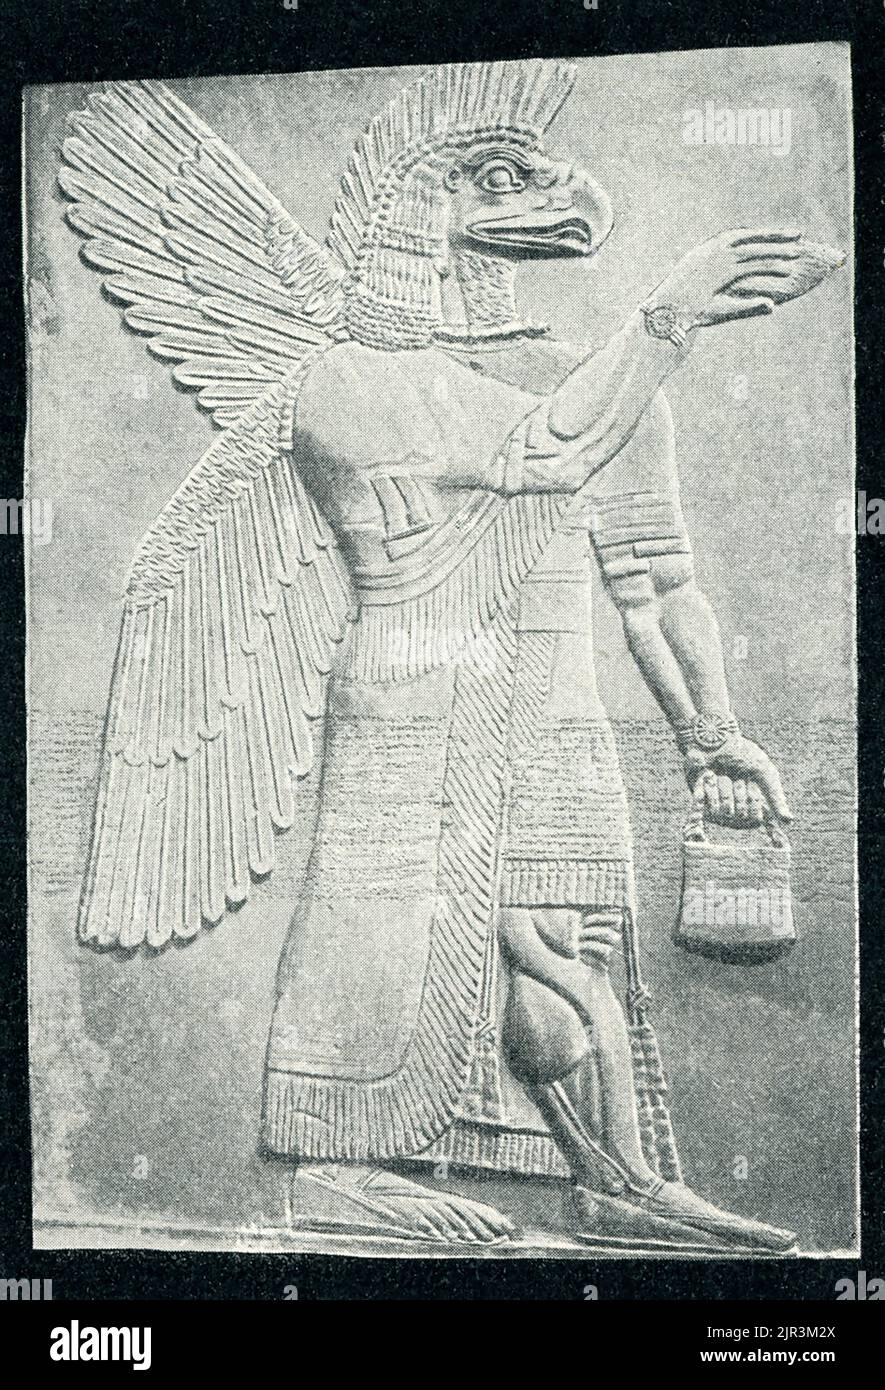 Die 1910 Überschrift lautet: 'Geflügelte Gottheiten - ein assyrisches Relief. Das Original befindet sich im British Museum in London.“ Dieses Genie, oder Demi-gott, war Teil einer Gruppe von geflügelten Kreaturen gegenüber einem stilisierten Baum, eine Szene wiederholt sich zahlreiche Male im Palast. Sie scheinen Fruchtbarkeitsrituale zu machen, die mit der Dattelpalme verbunden sind, einem Baum, der von den Assyrern heilig gehalten wird, weil er Nahrung, Getränke, Holz und Schutz bietet. Dieses Relief, einst hell bemalt, ist ein Fragment aus dem nordwestlichen Palast, der vom assyrischen König Aschirnasirpal II. (883 – 859 v. Chr.) in seiner Hauptstadt Kalhu, der heutigen irakischen Stadt, erbaut wurde Stockfoto